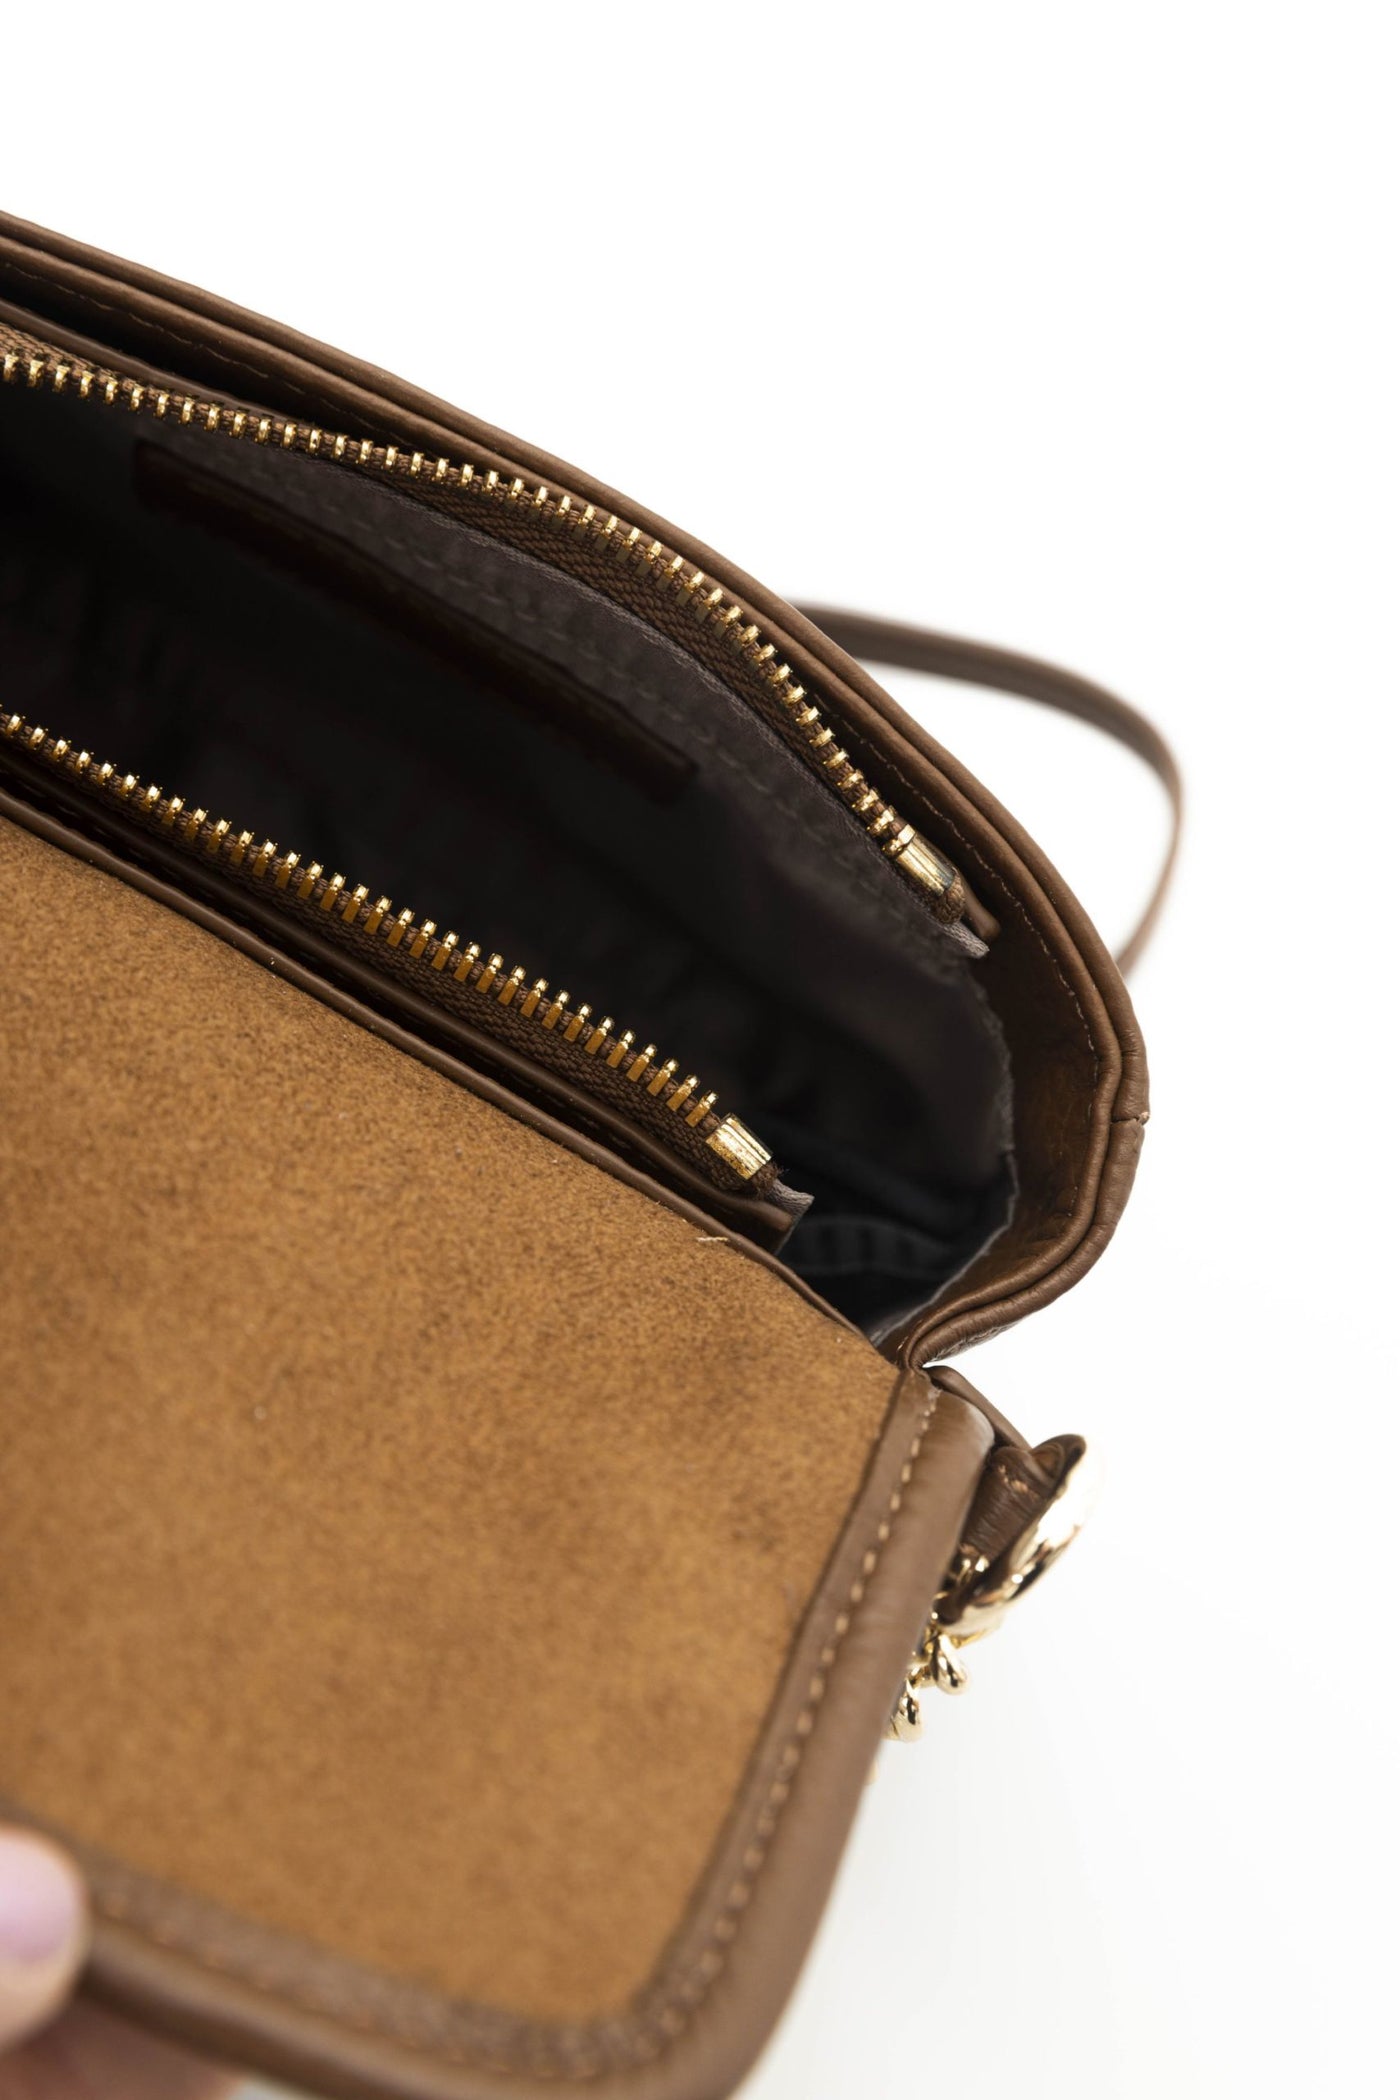 Cerruti 1881 Brown Leather Crossbody Bag